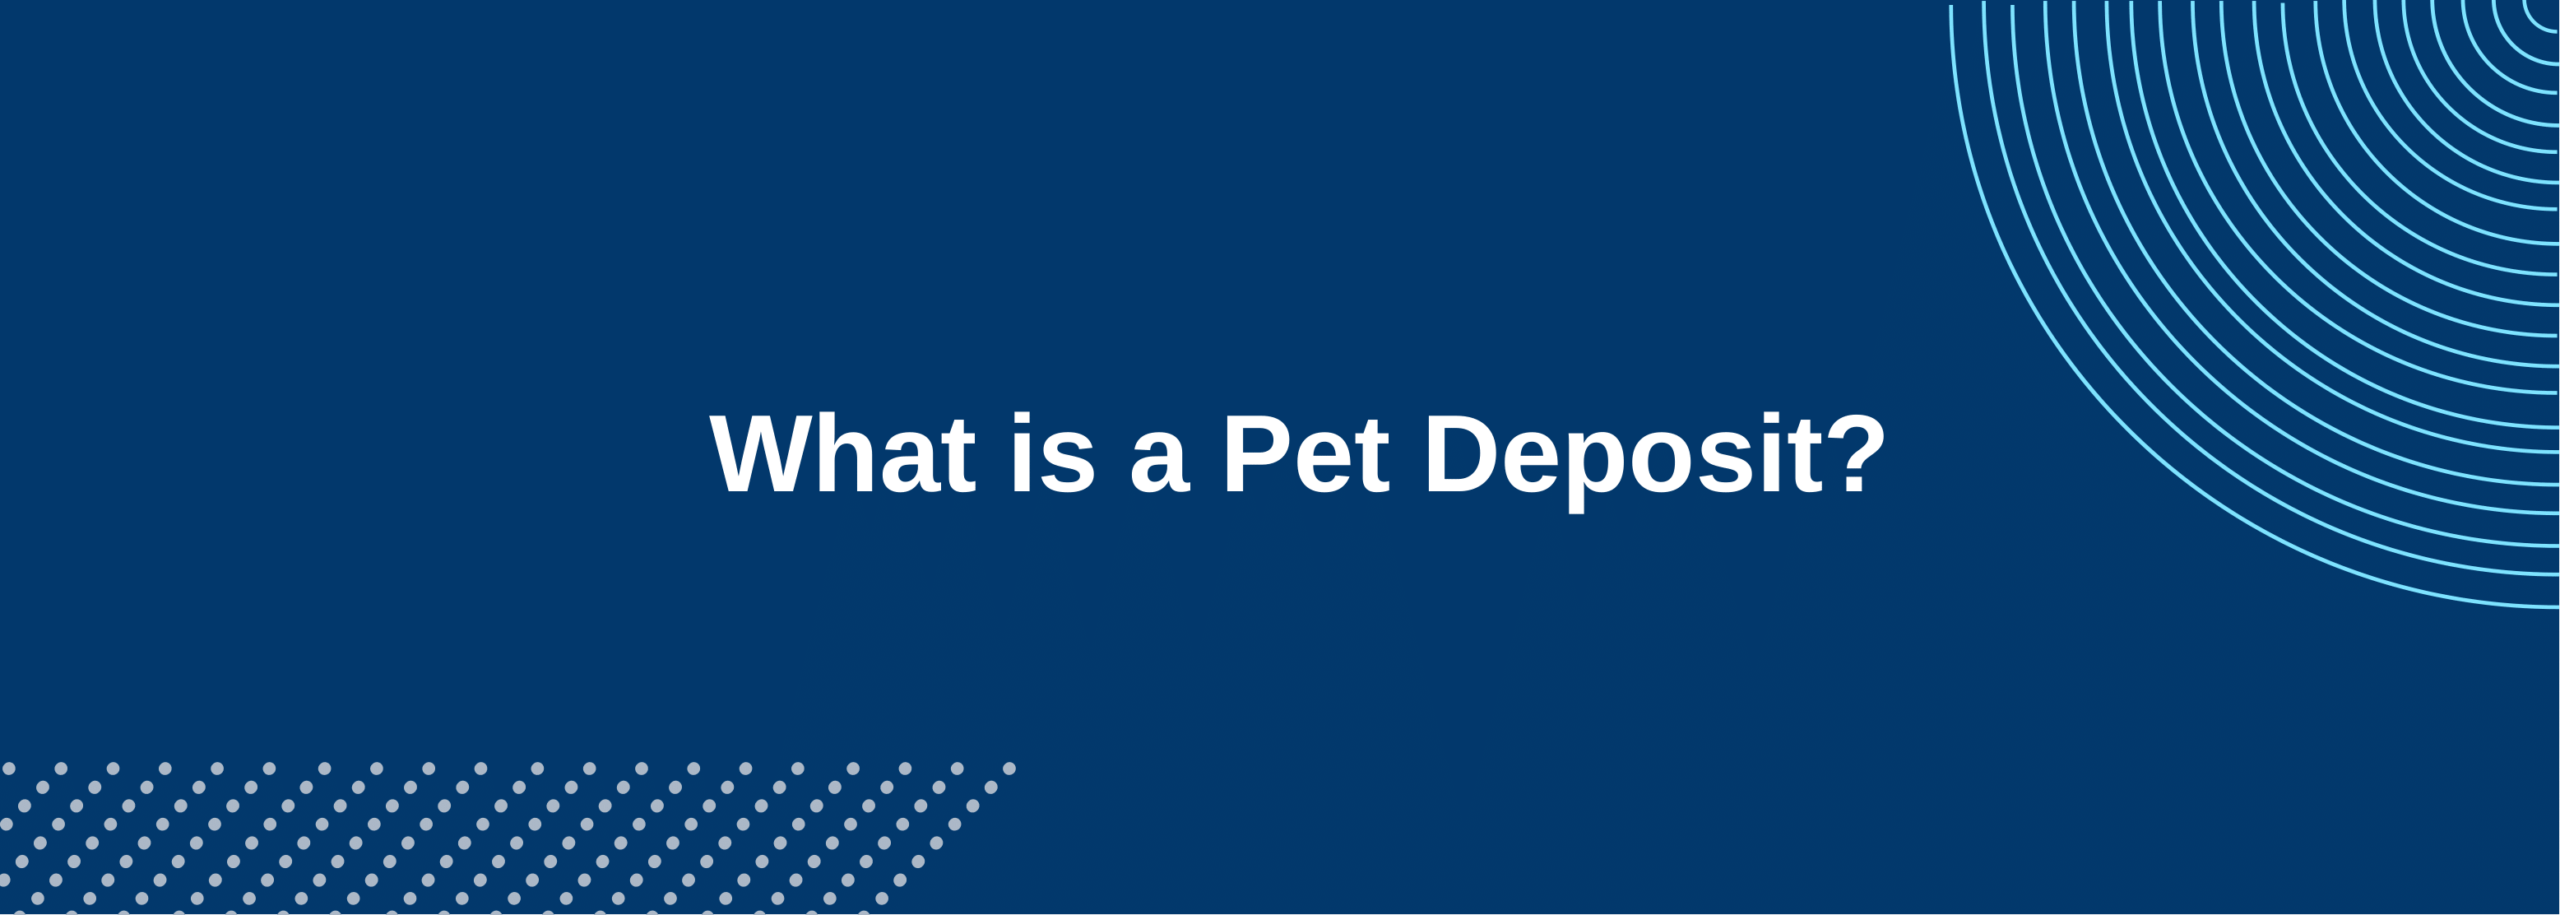 Pet Deposit